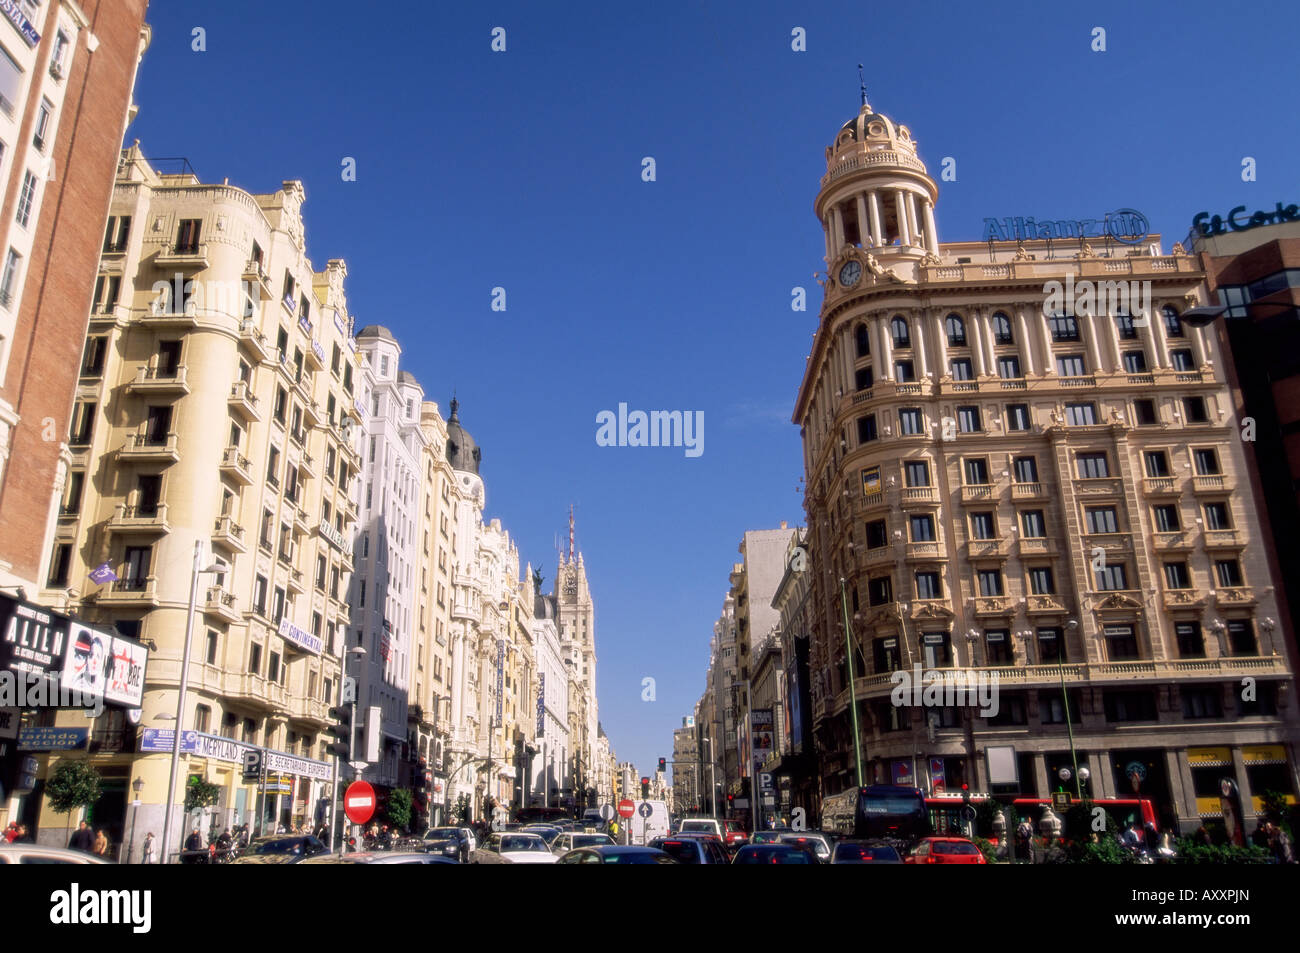 Plaza de Callao (Callao Square), Gran Via avenue, Madrid, Spain, Europe Stock Photo